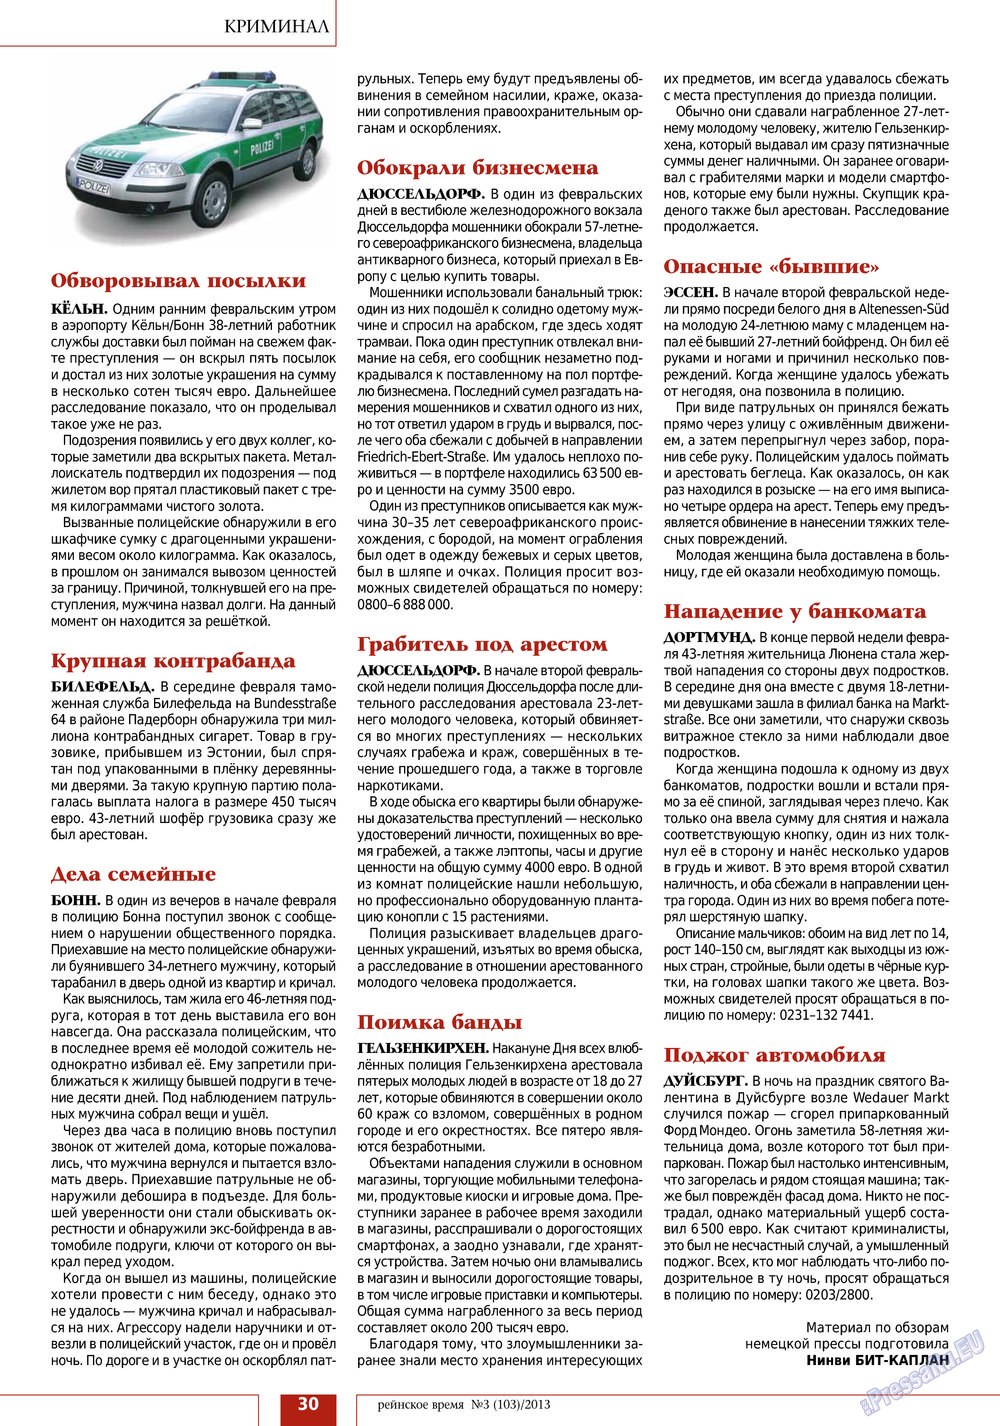 Рейнское время (журнал). 2013 год, номер 3, стр. 30